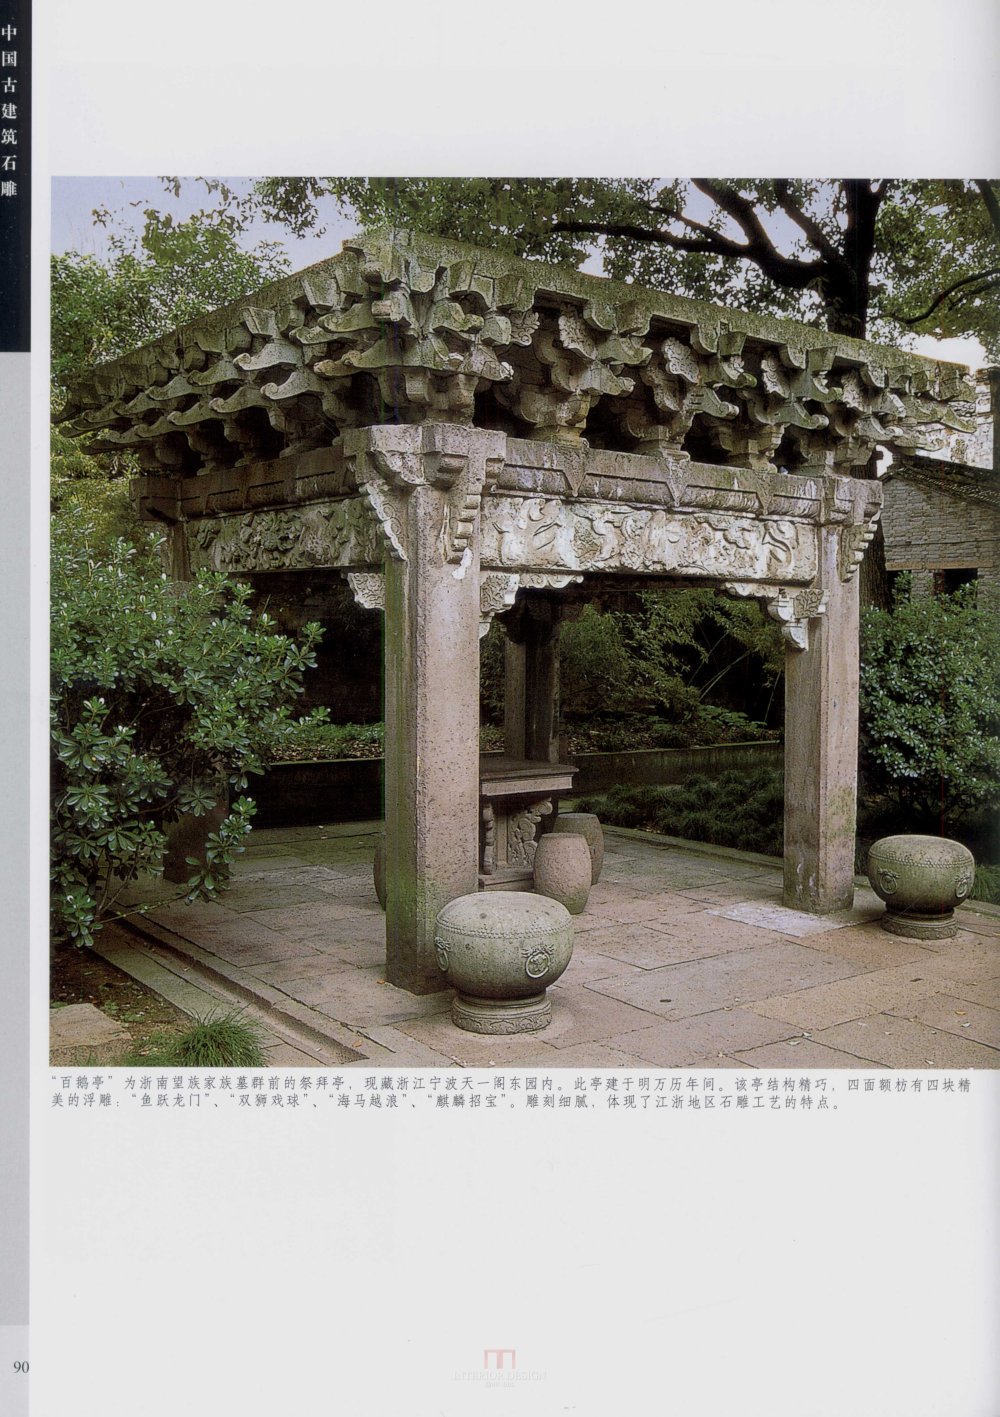 中国古代建筑 石雕_kobe 0098.jpg